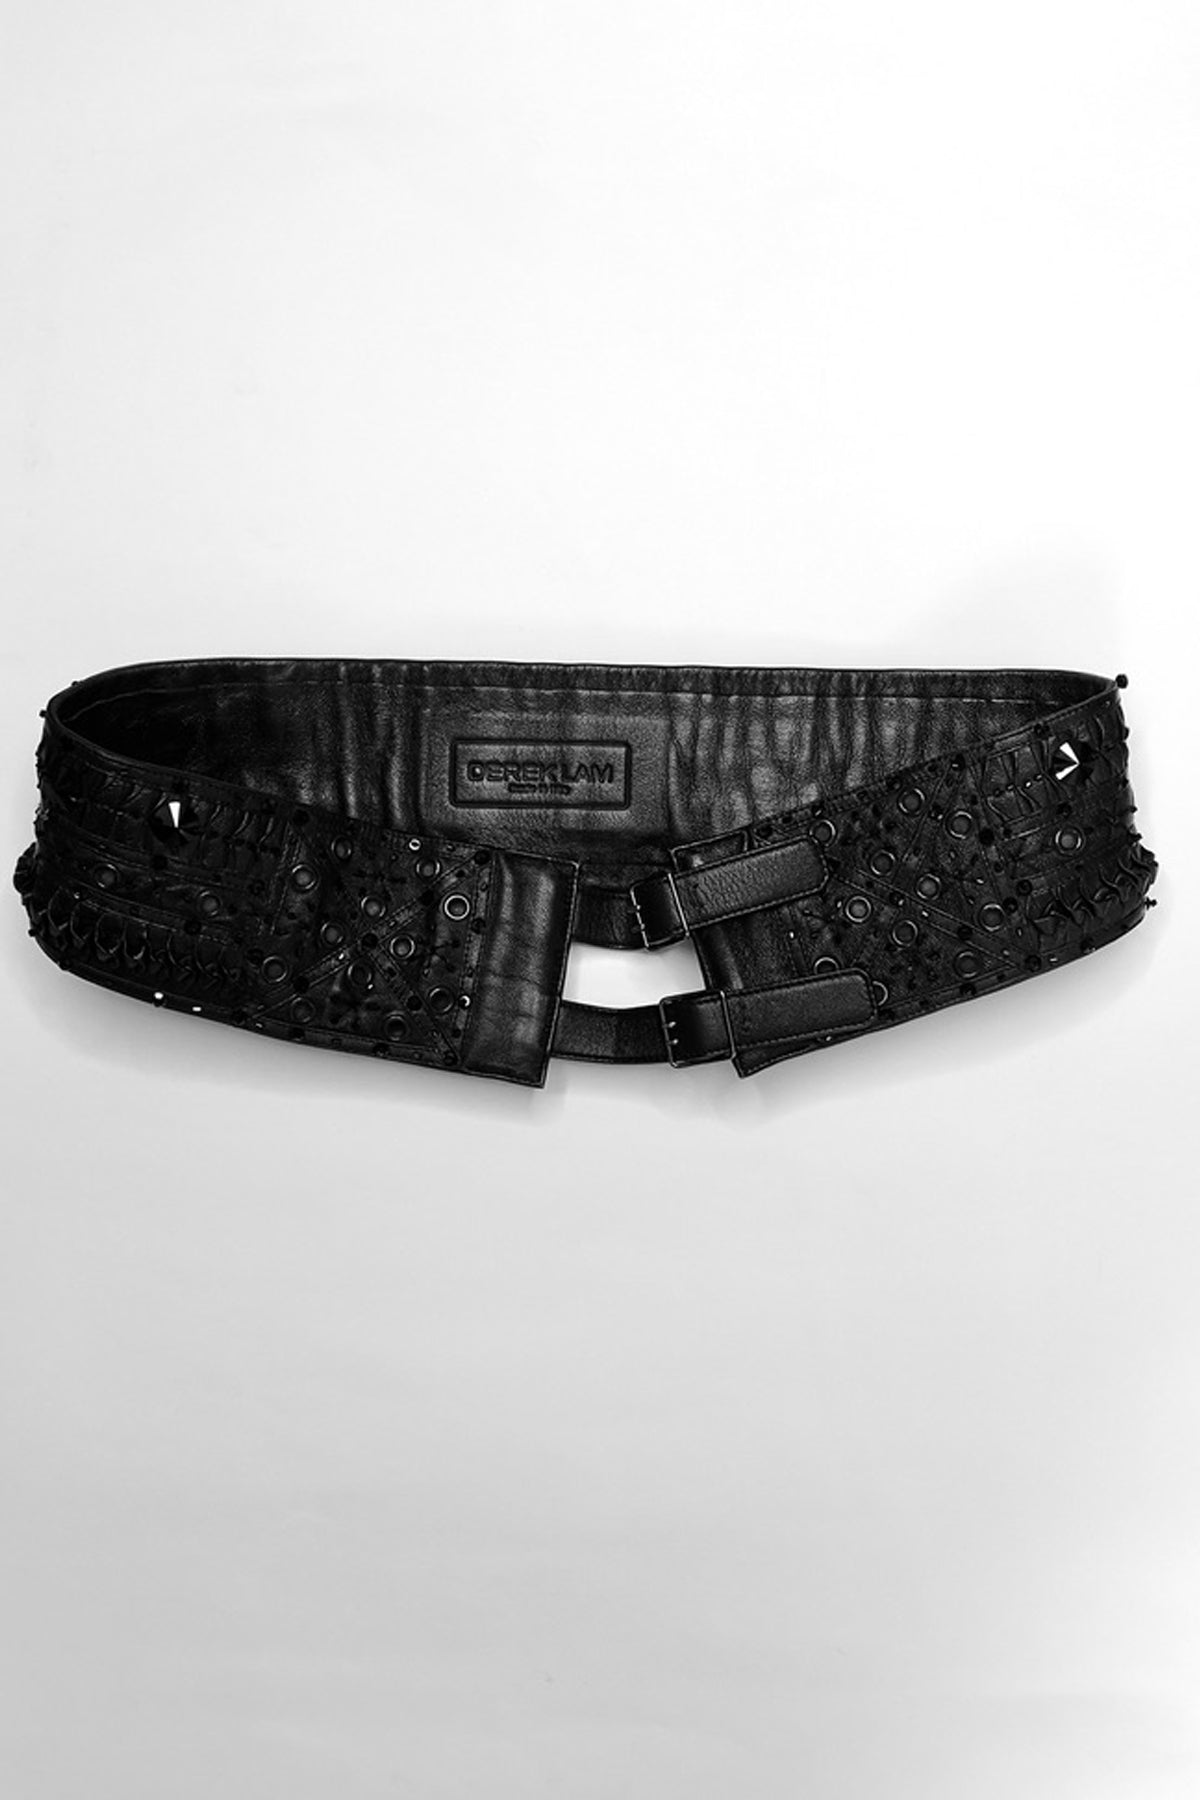 Derek Lam Embroidered Waist Belt